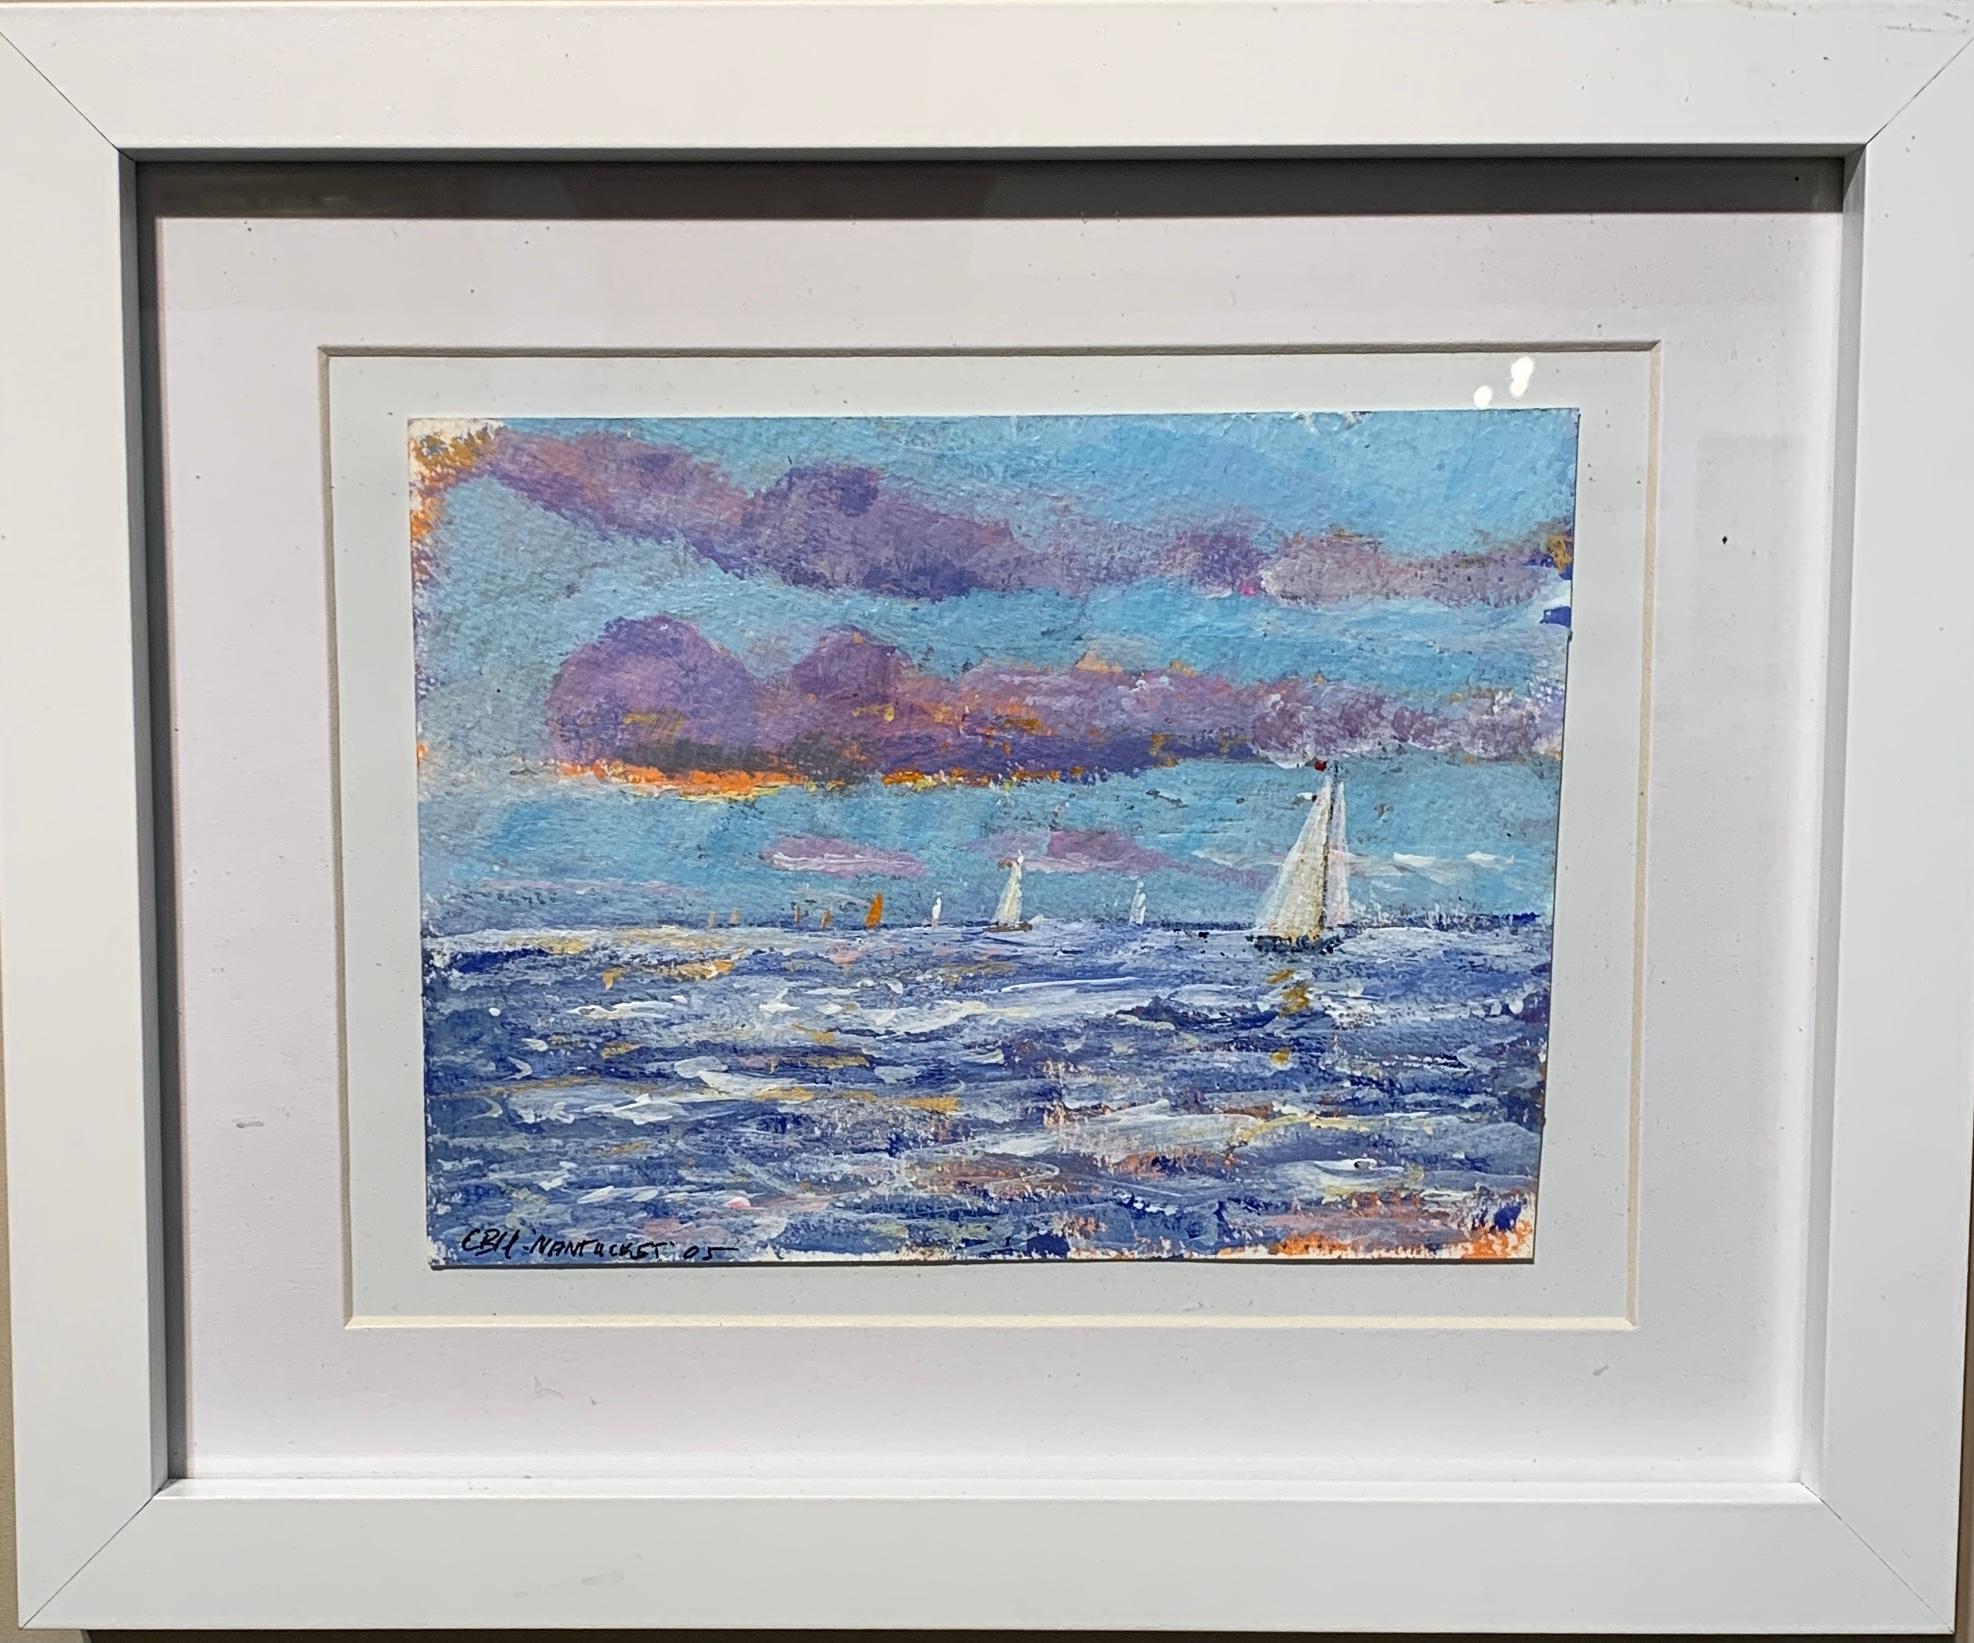 The English Impressionist scene, Yacht segelt vor der Küste von Nantucket.